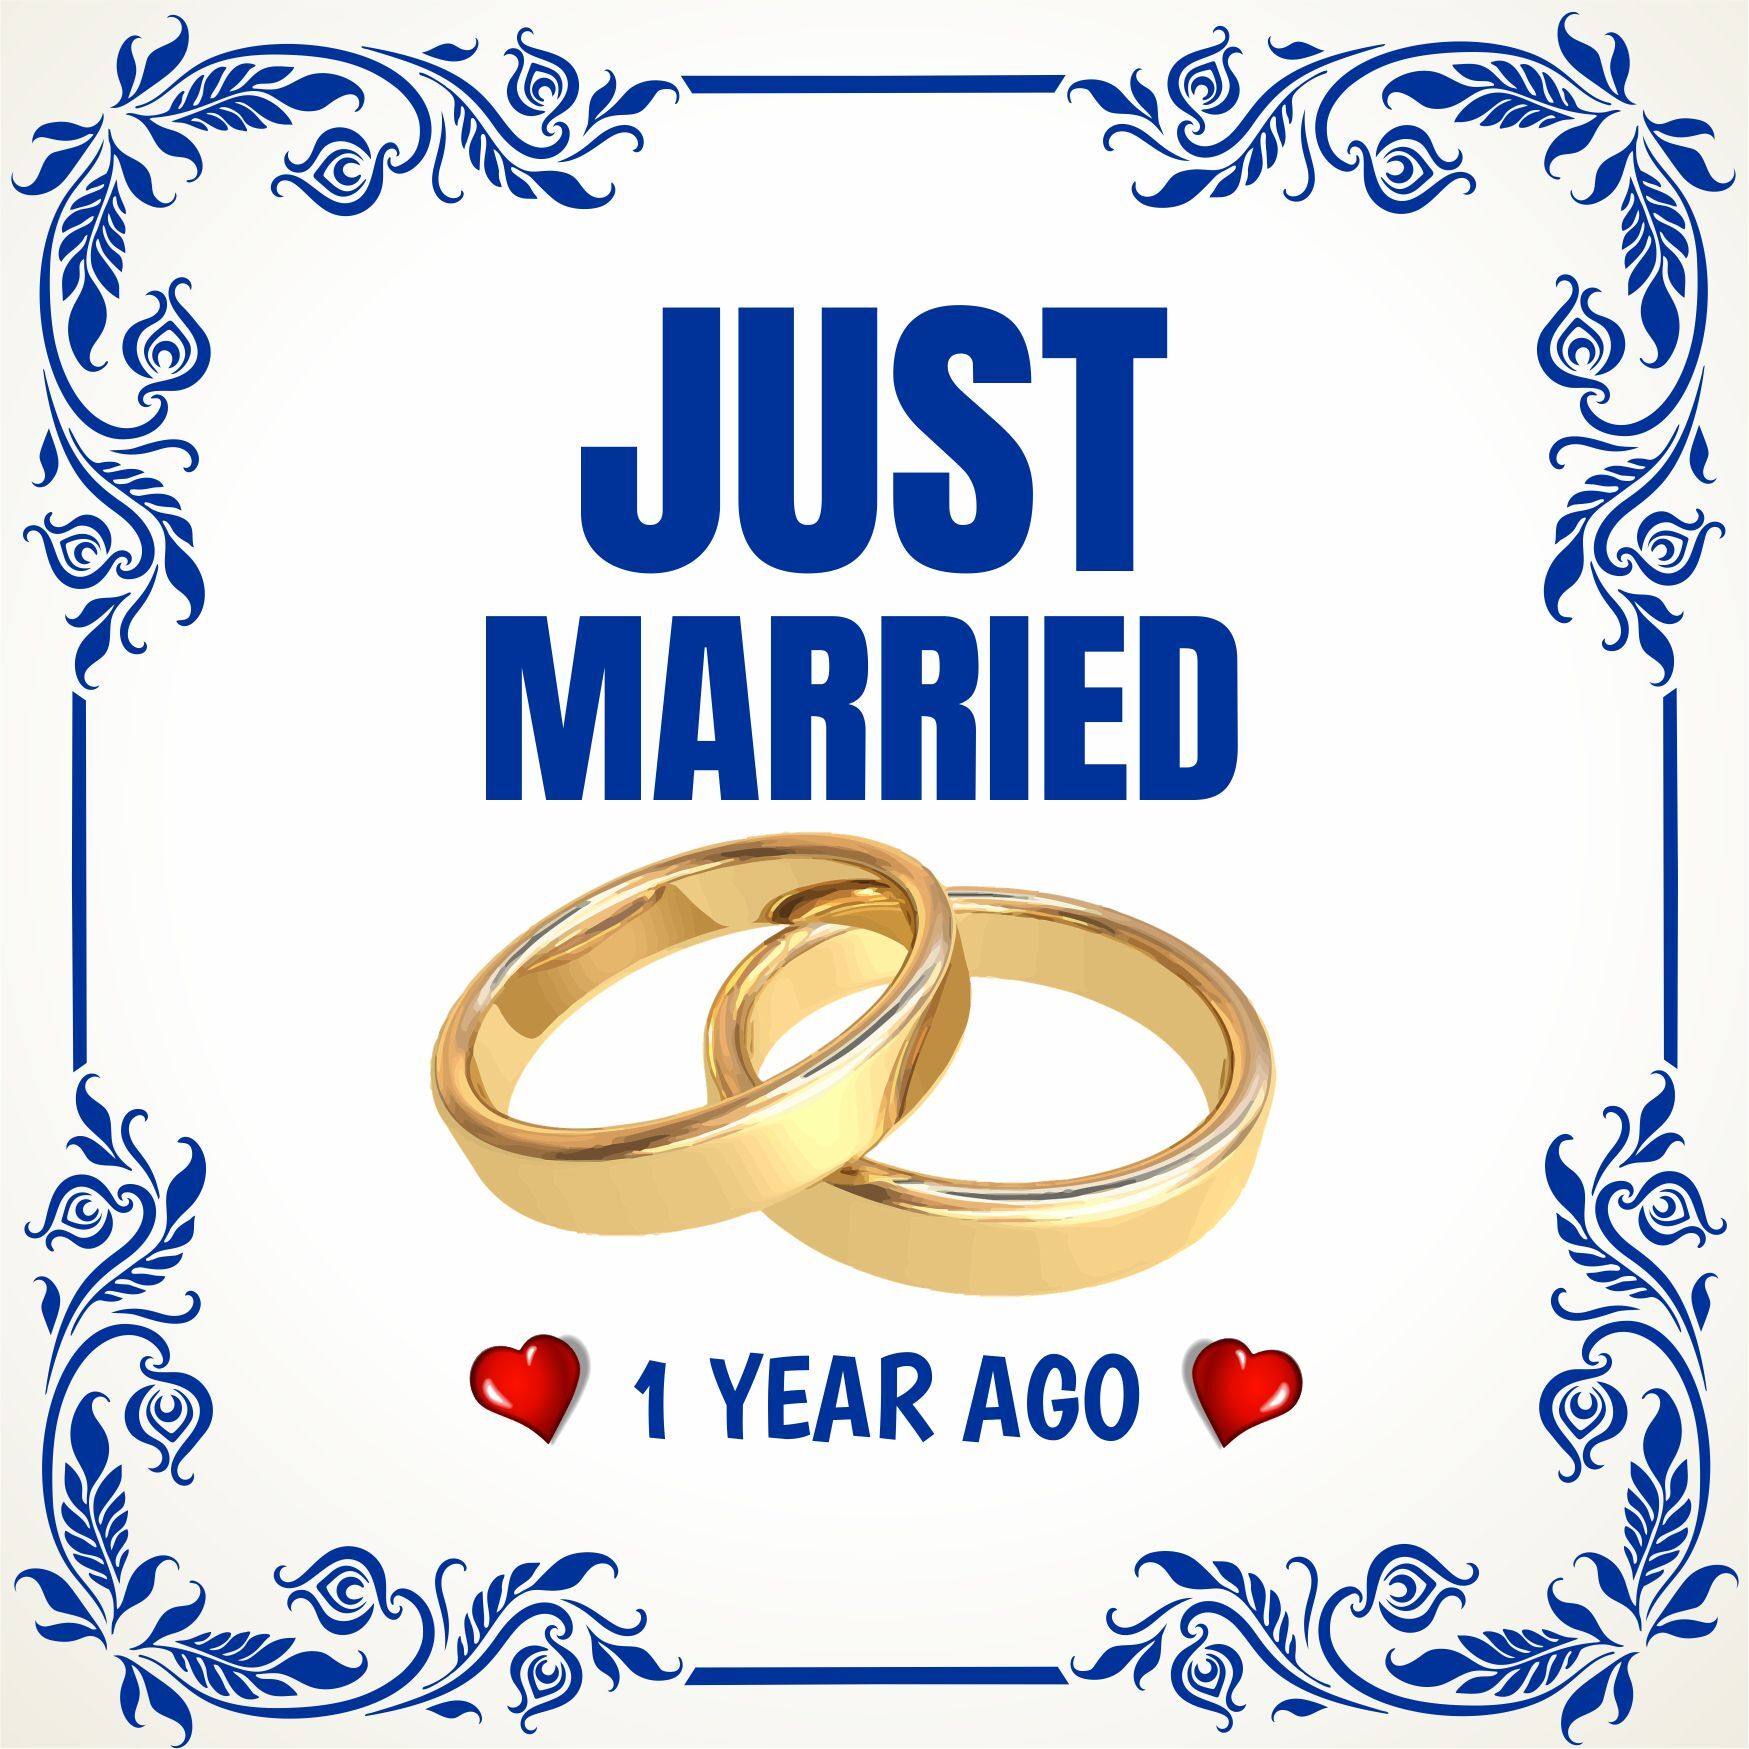 Tegel just married 1 year ago pas getrouwd 1 jaar geleden